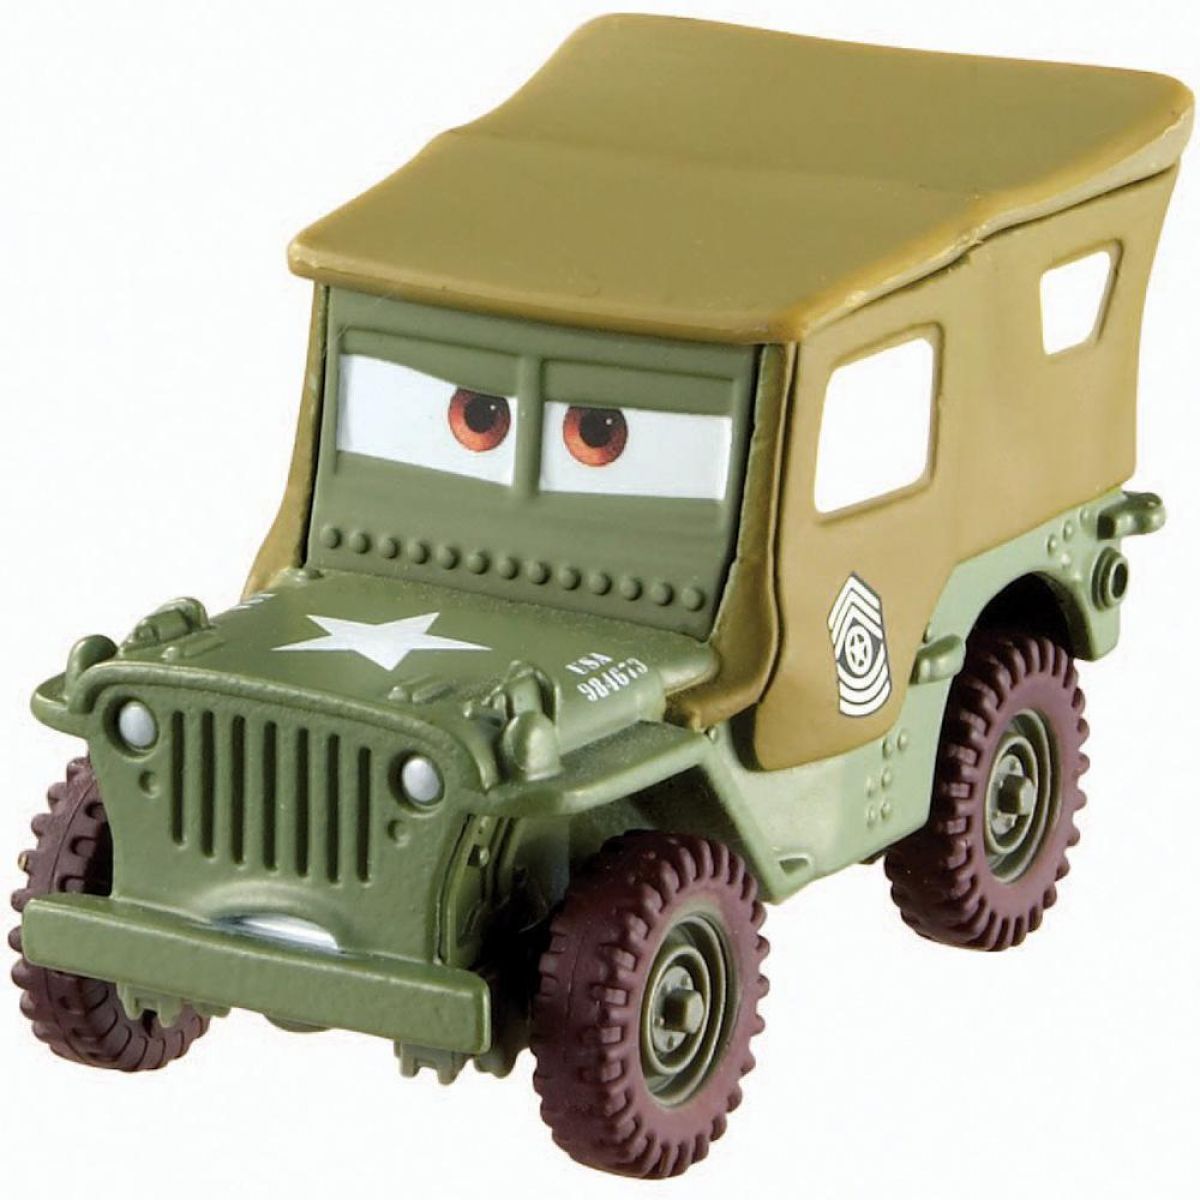 Cars 2 Auta Mattel W1938 - Sarge